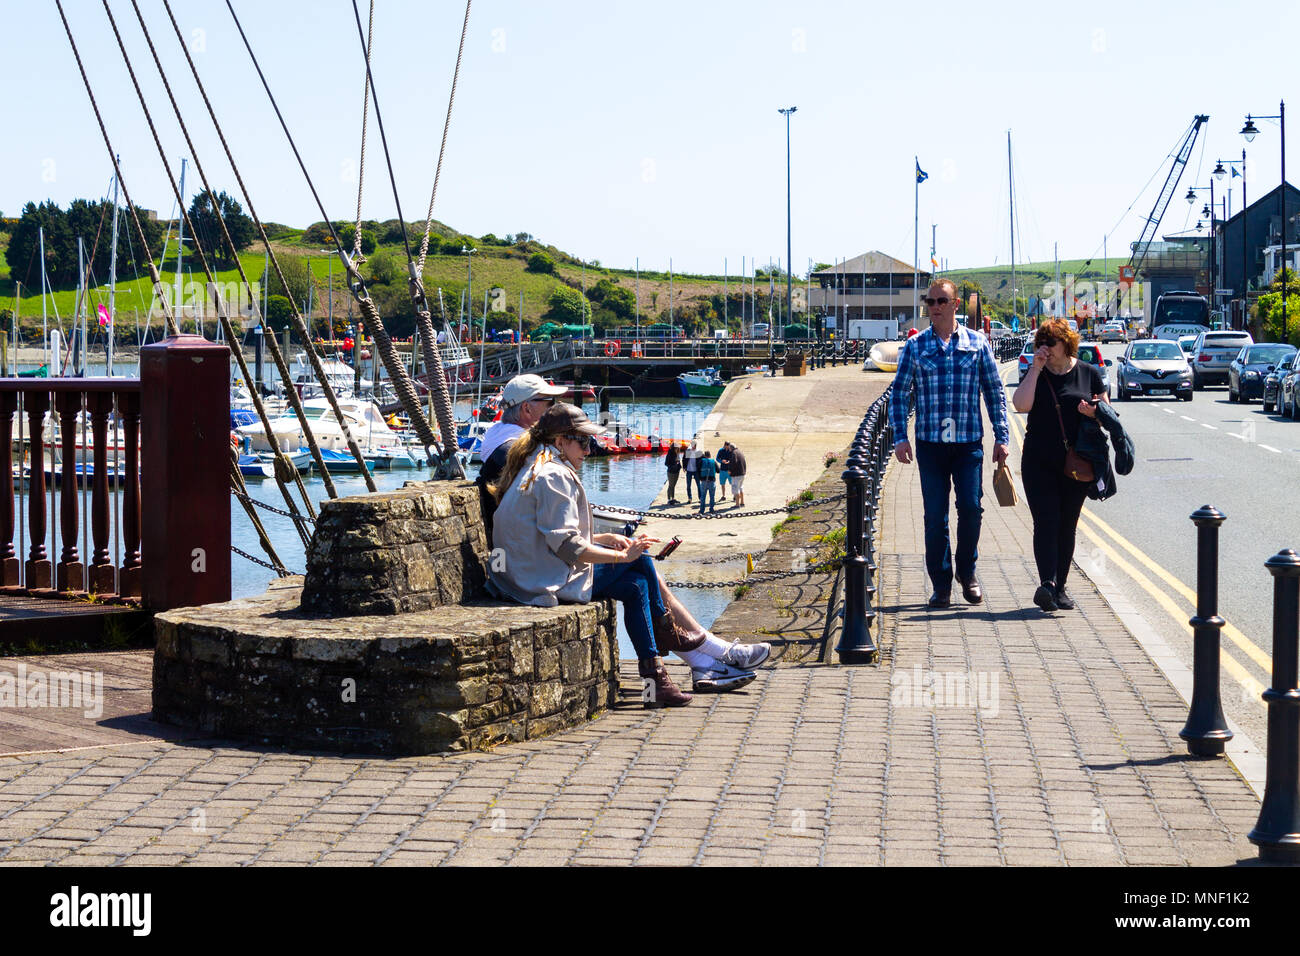 Los turistas disfrutando del sol brillante en Kinsale Irlanda, un popular destino de vacaciones junto al mar. Foto de stock